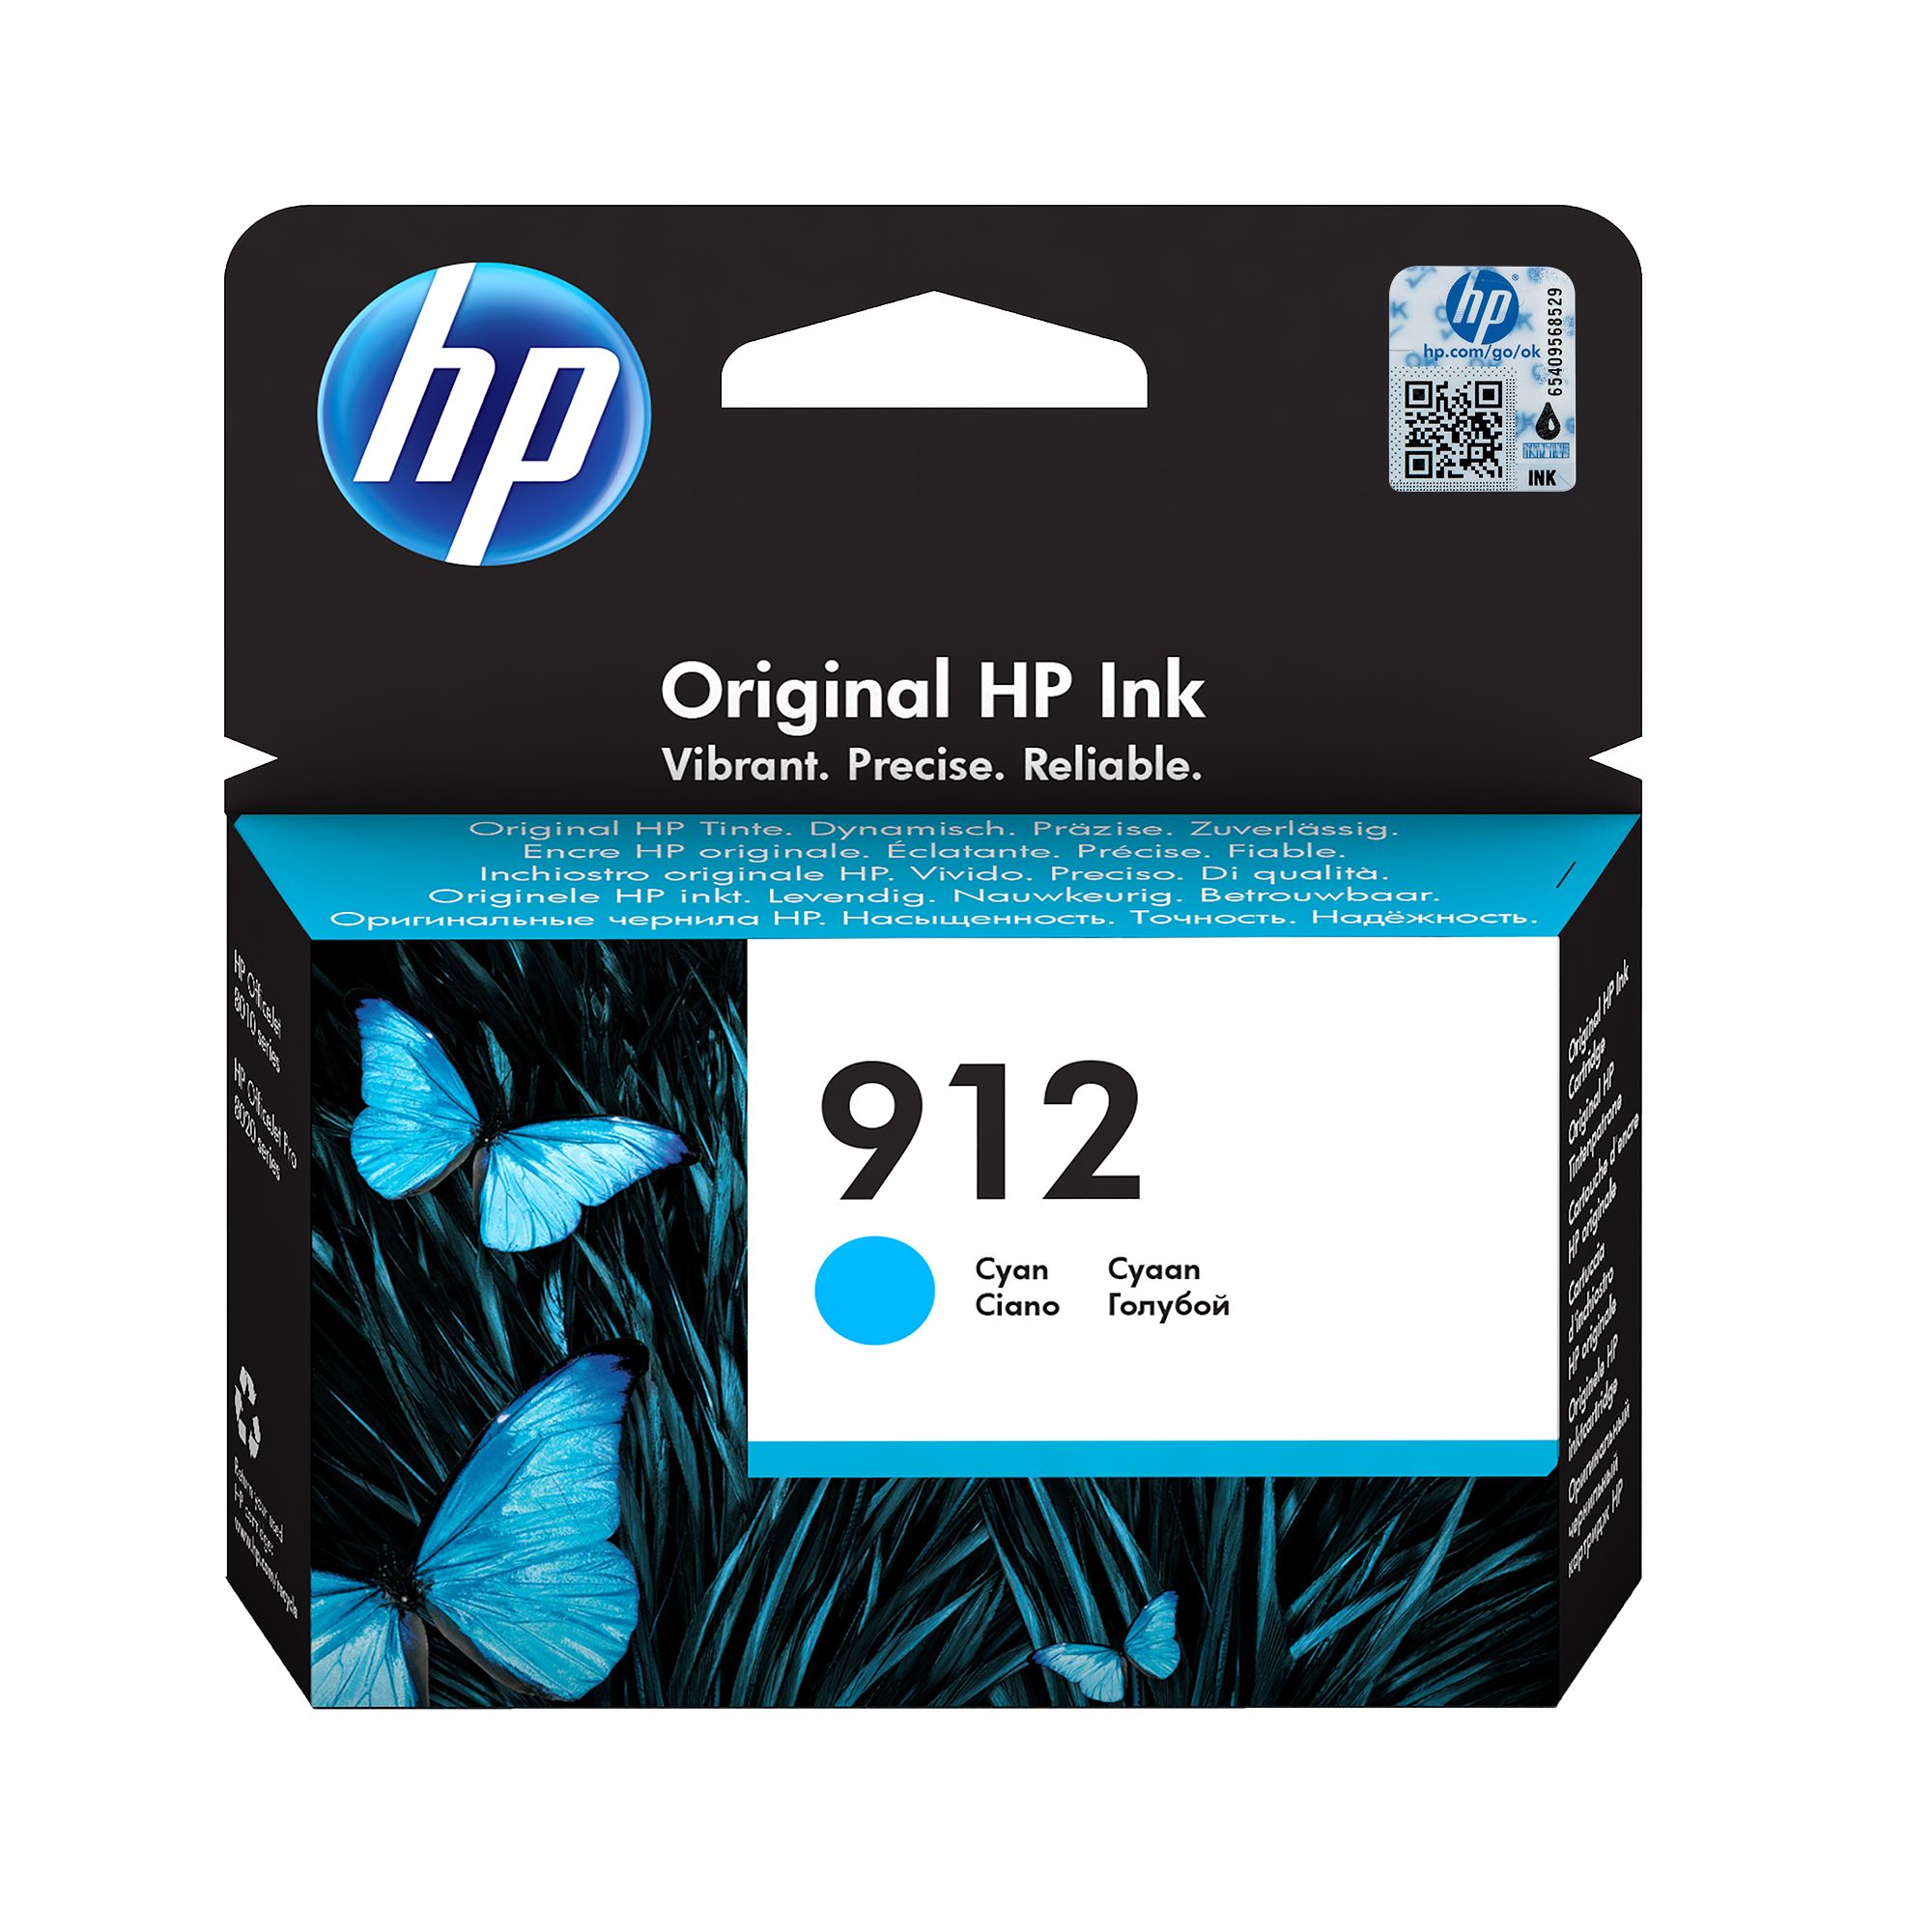 HP 912 Cyan Ink Cartridge_1